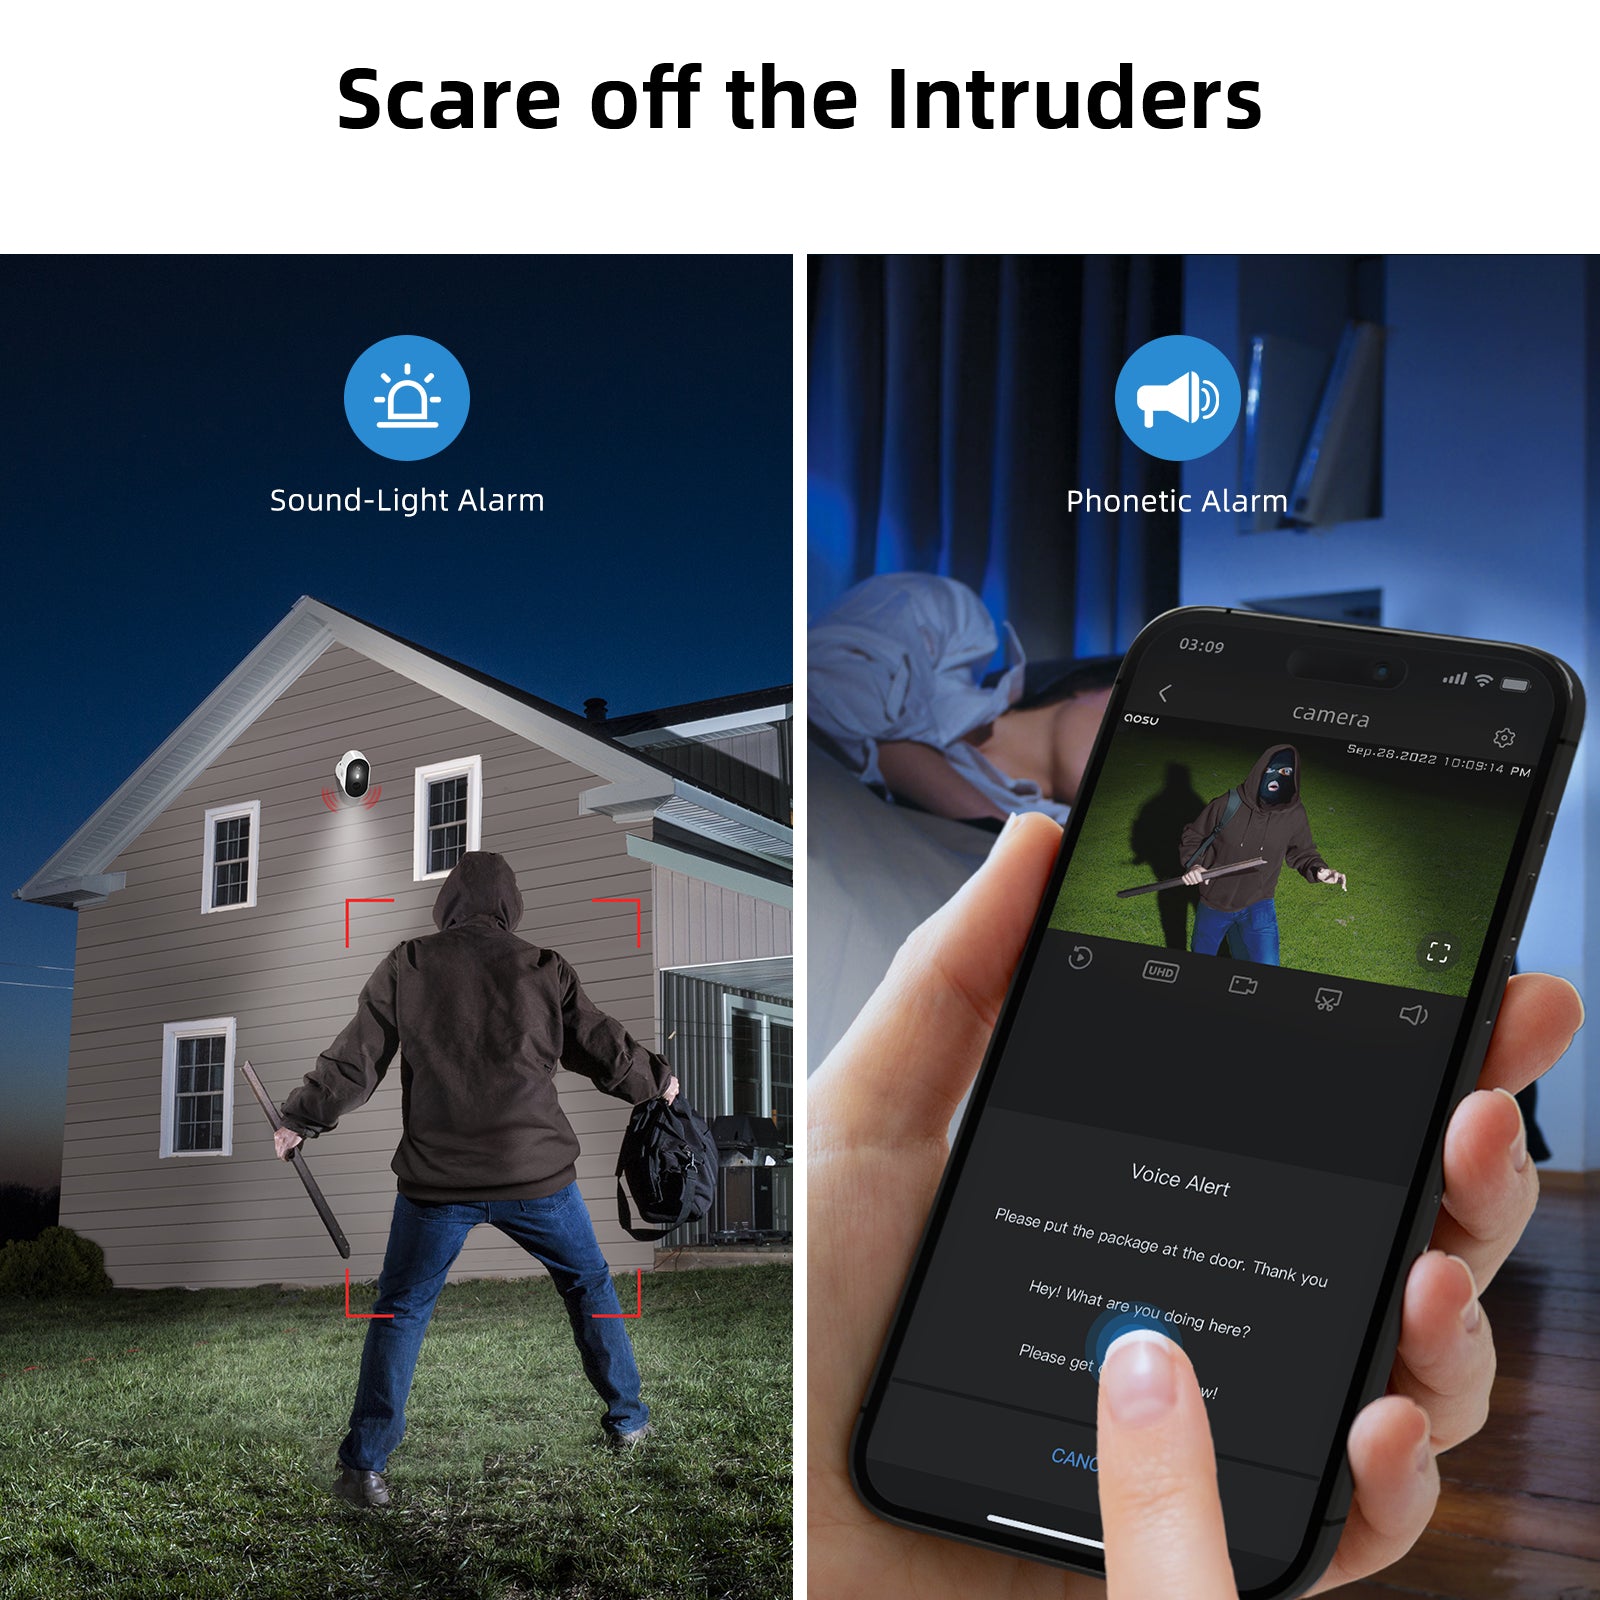 Scare off the Intruders